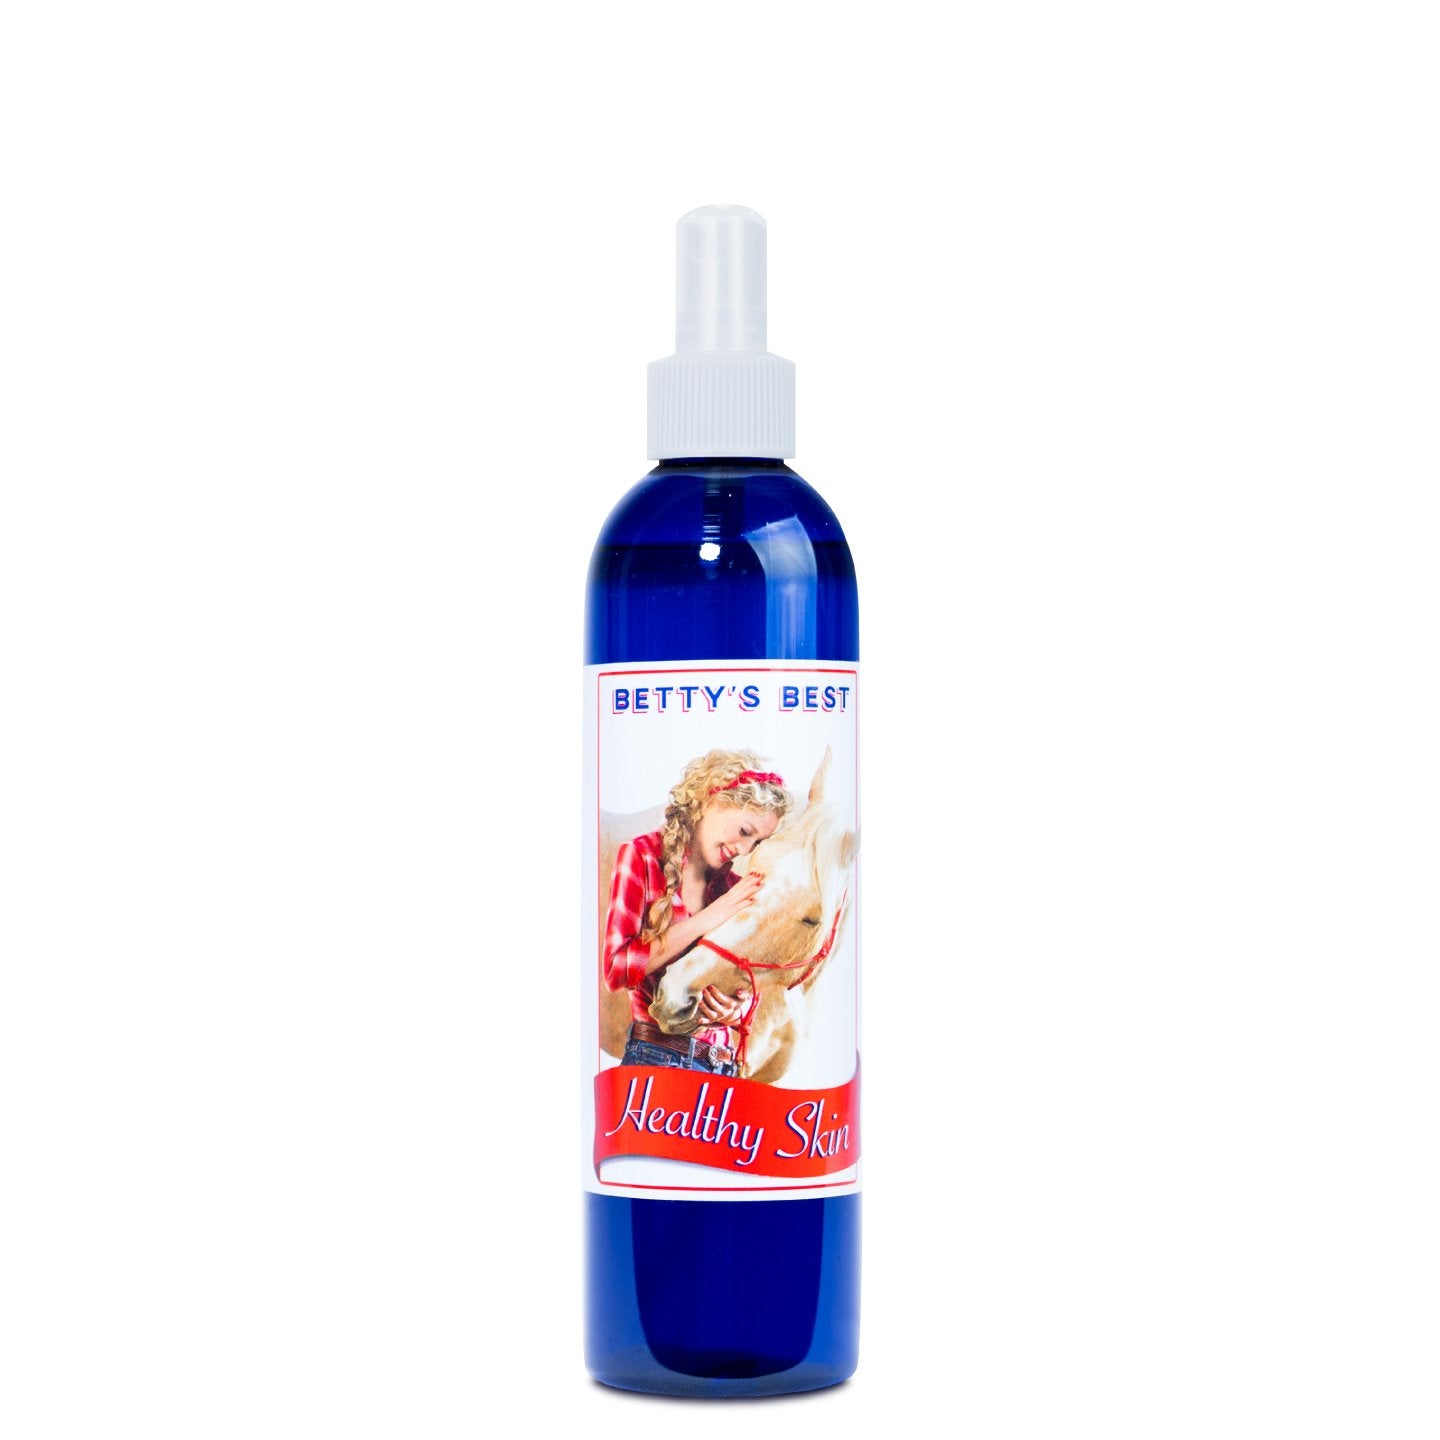 BETTY'S BEST Healthy Skin - 4oz bottle